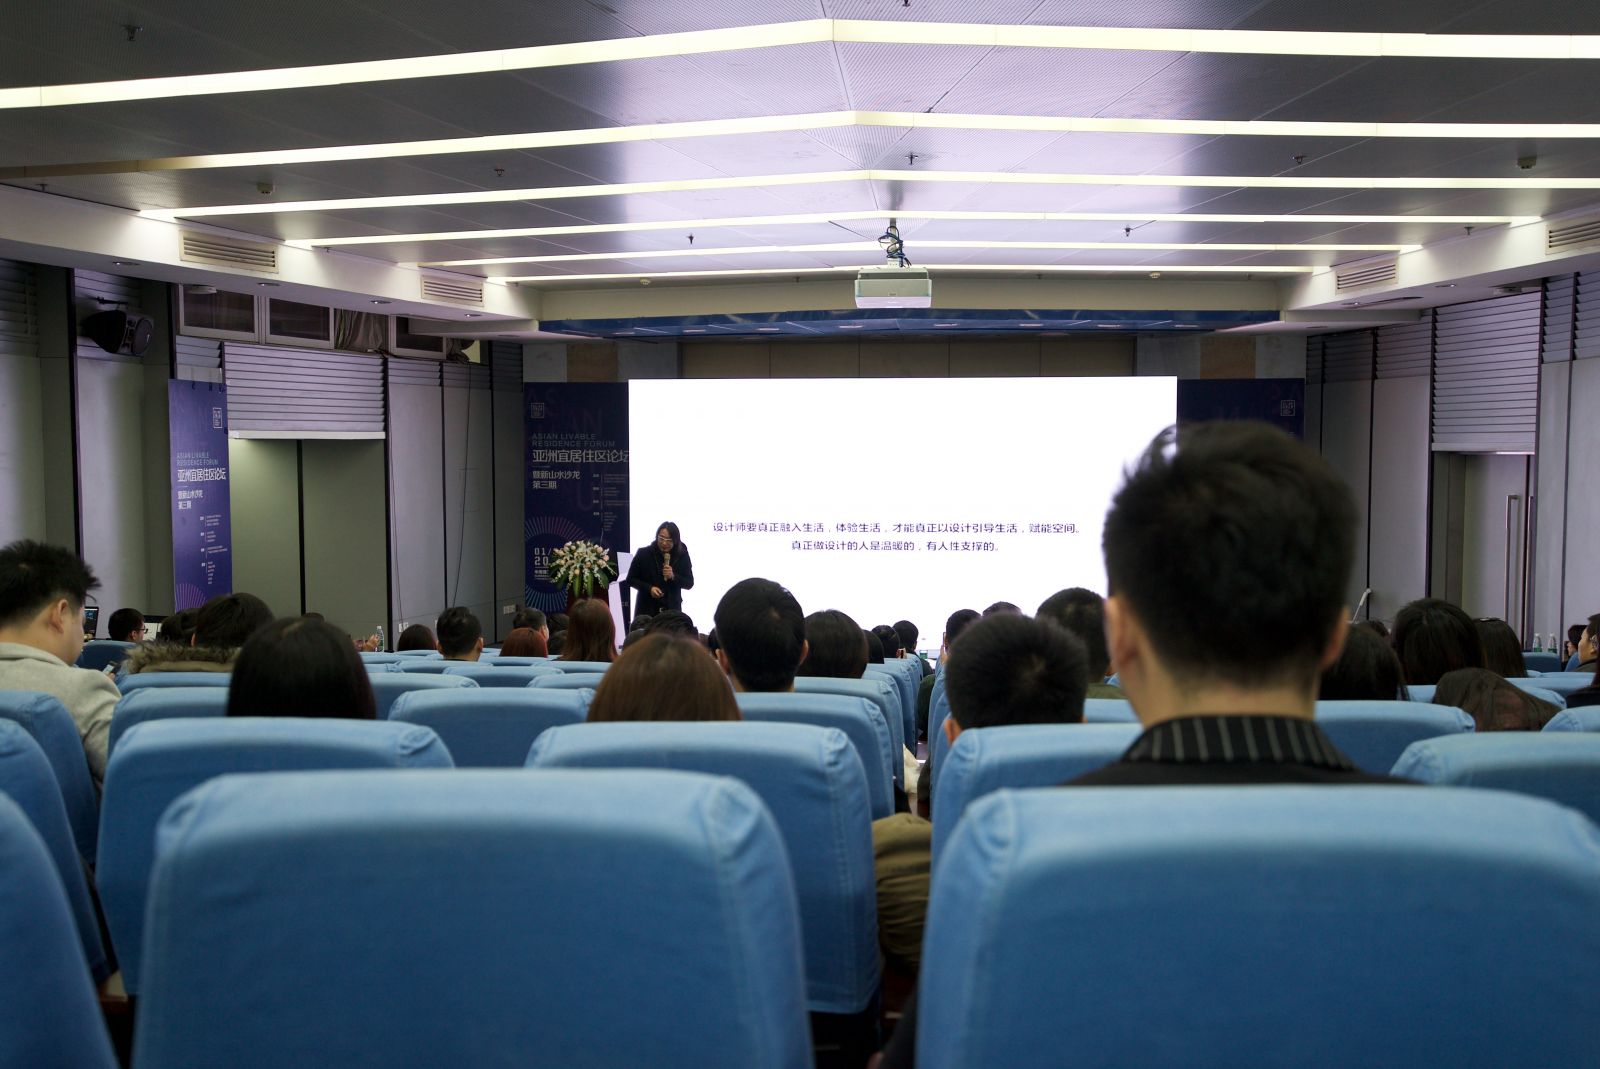 亚洲宜居住区论坛暨新山水沙龙第三期在广州成功举办